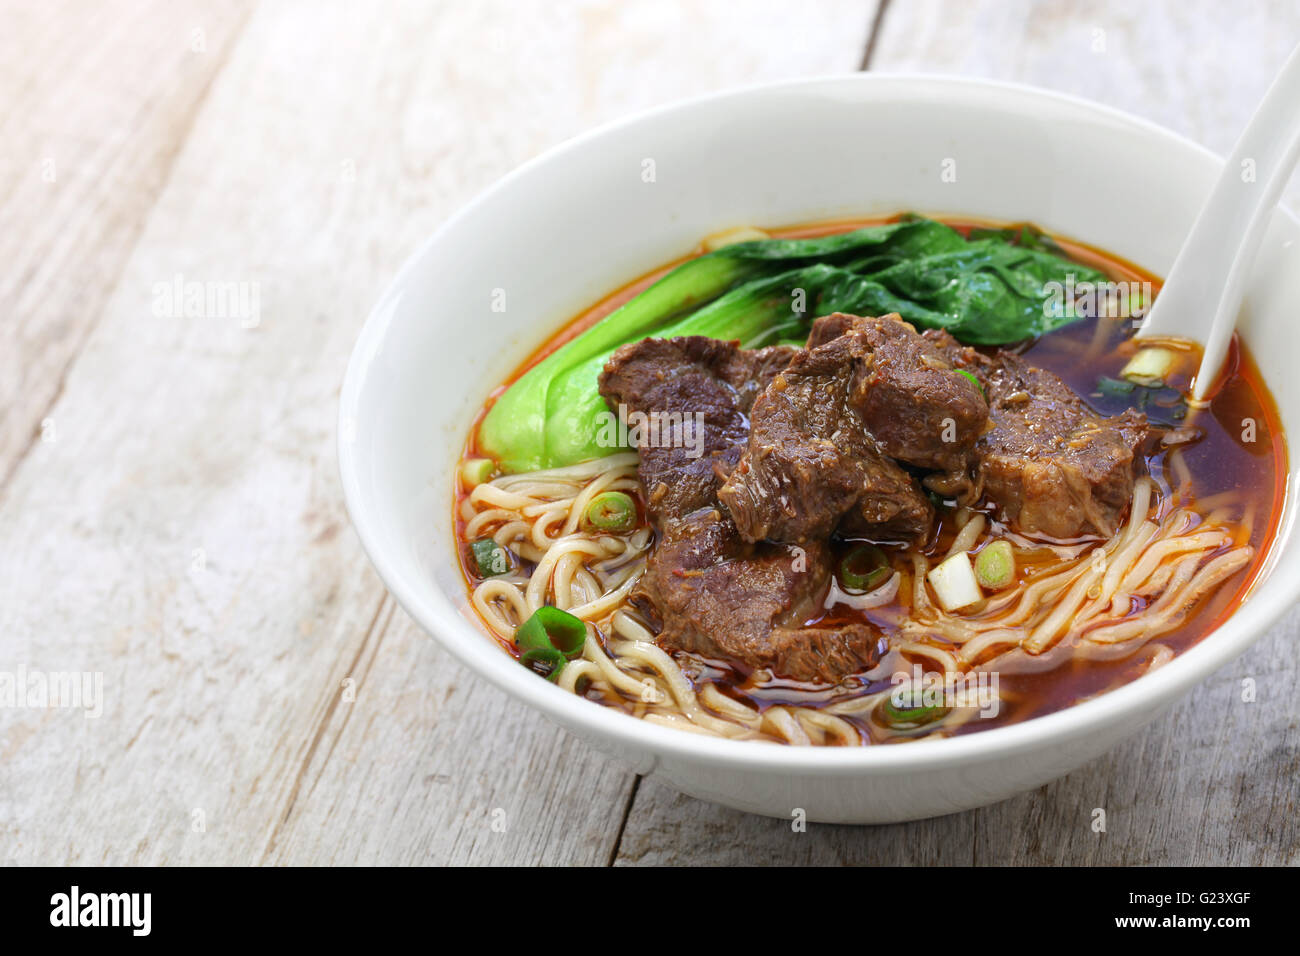 Soupe aux nouilles boeuf, chinois cuisine taiwanaise Banque D'Images